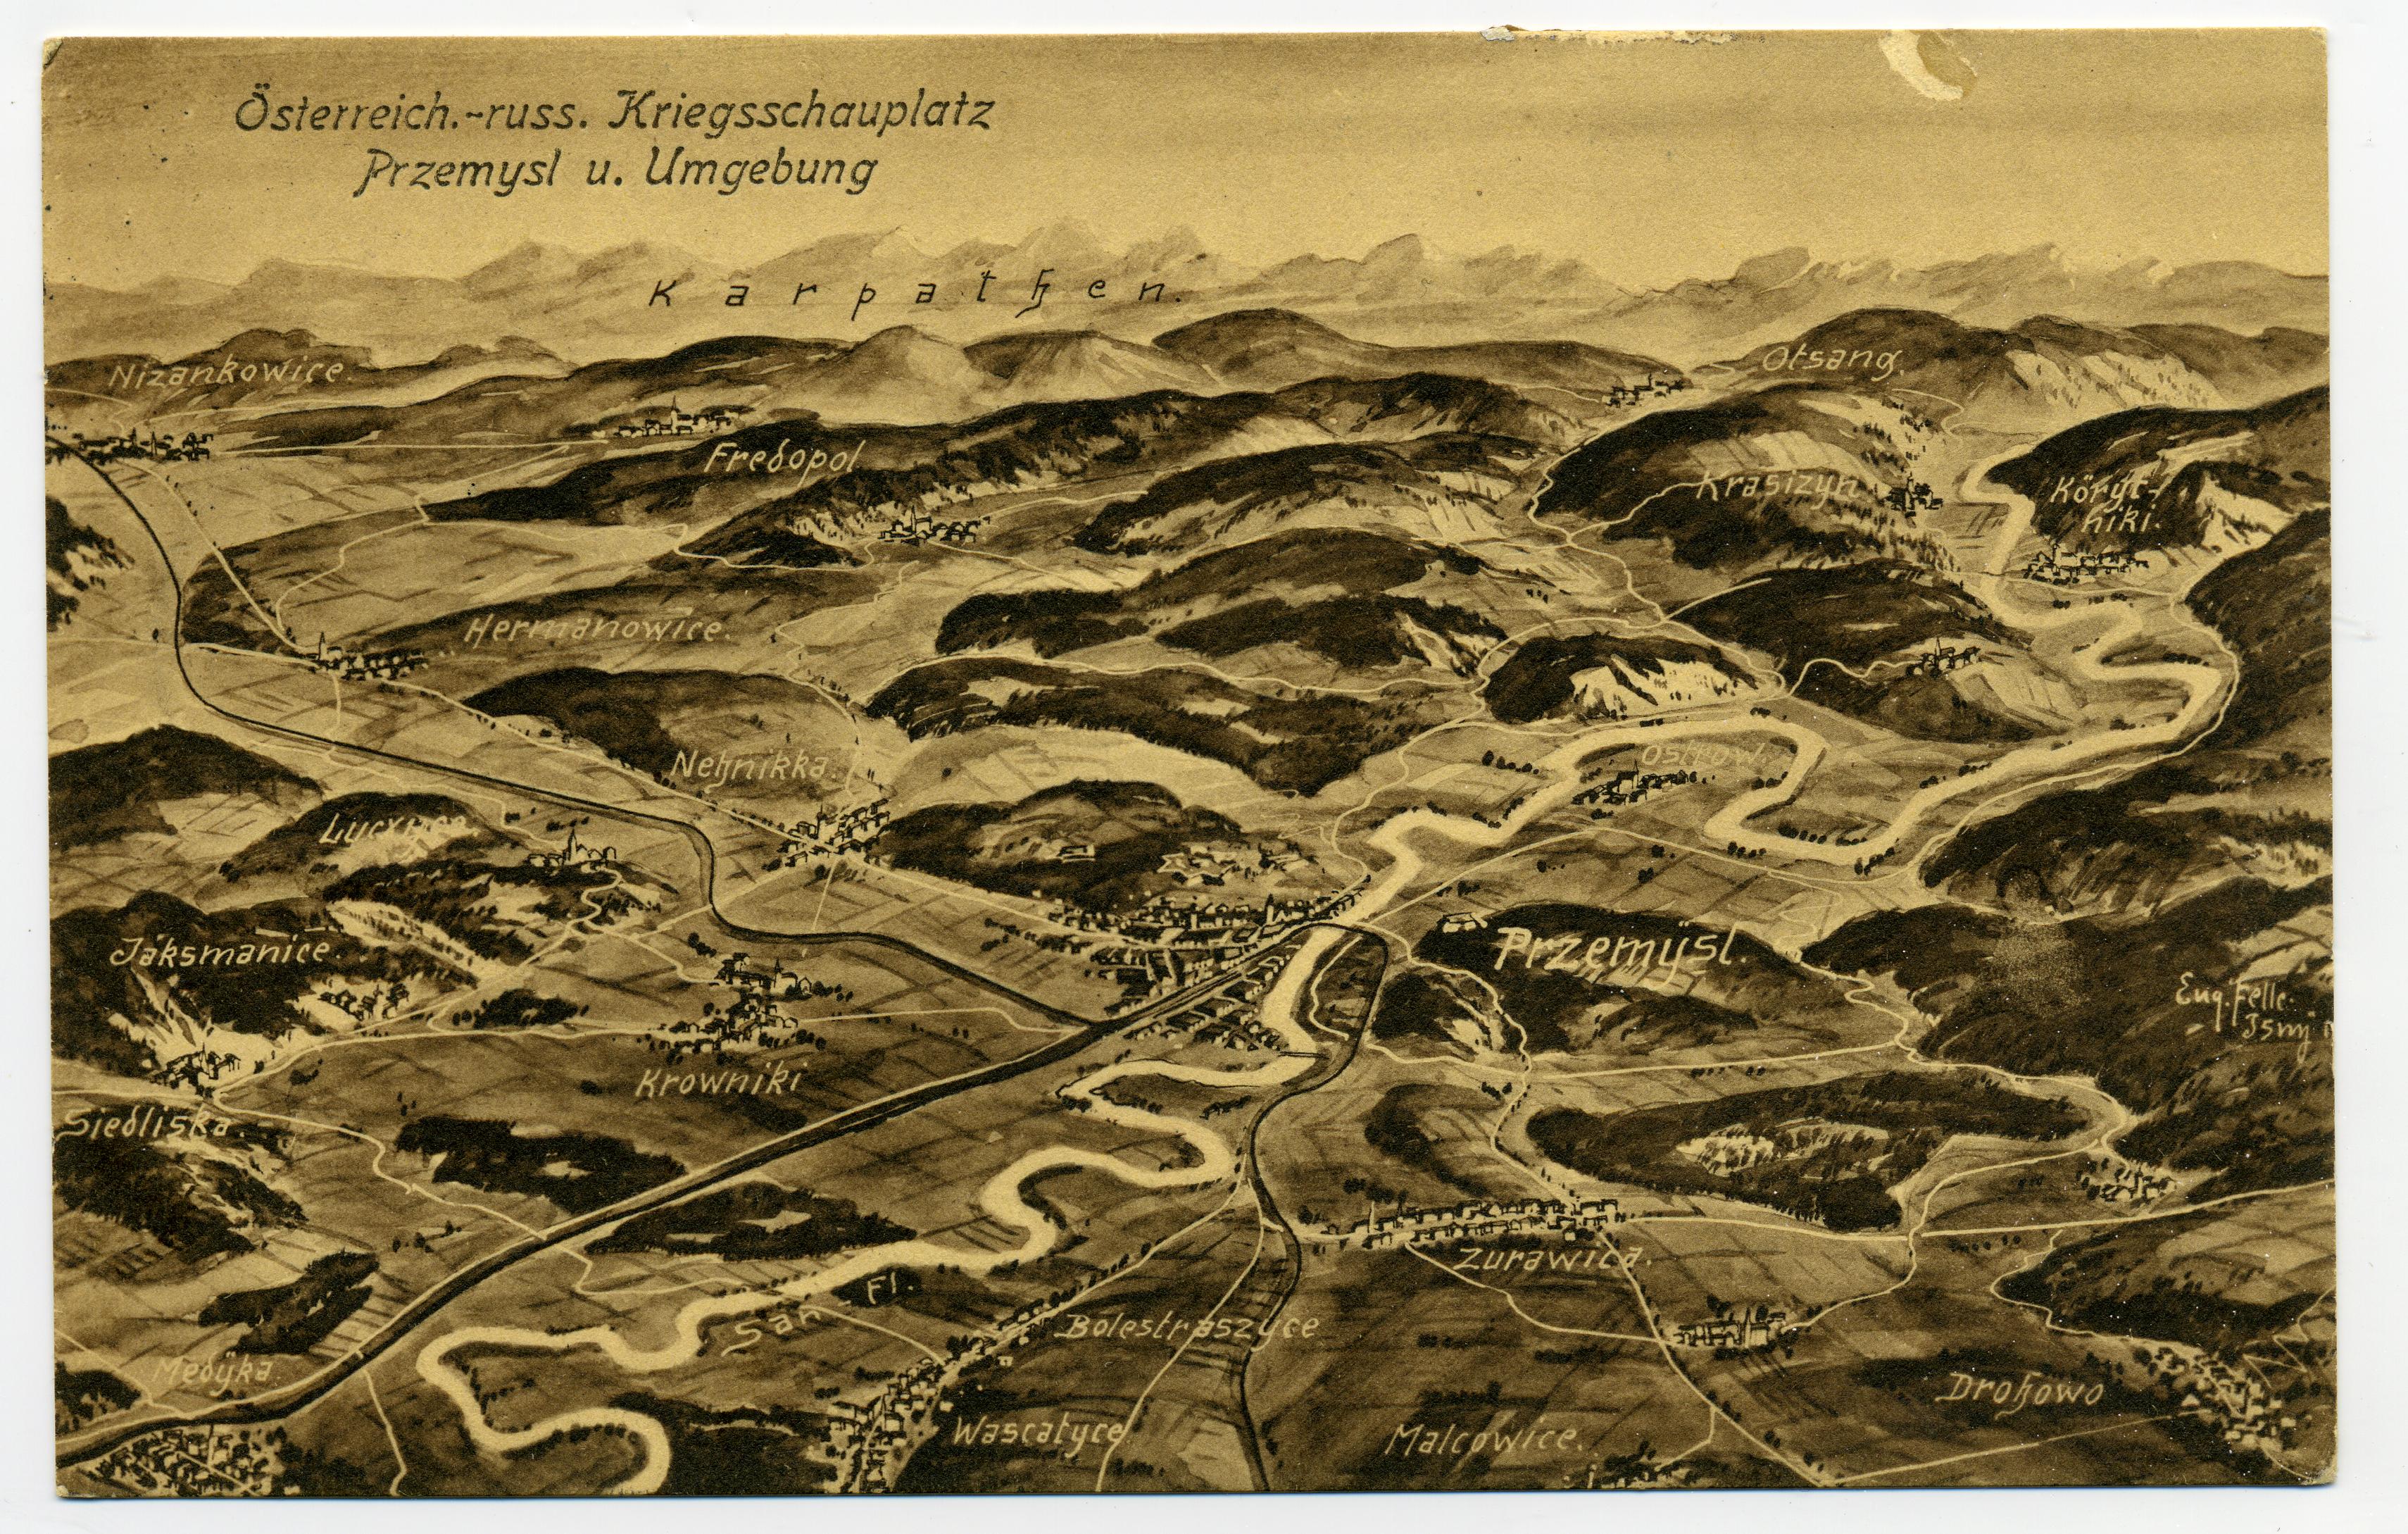 Exponat: Postkarte: Österreichisch-russischer Kriegsschauplatz um Przemysl, 1915